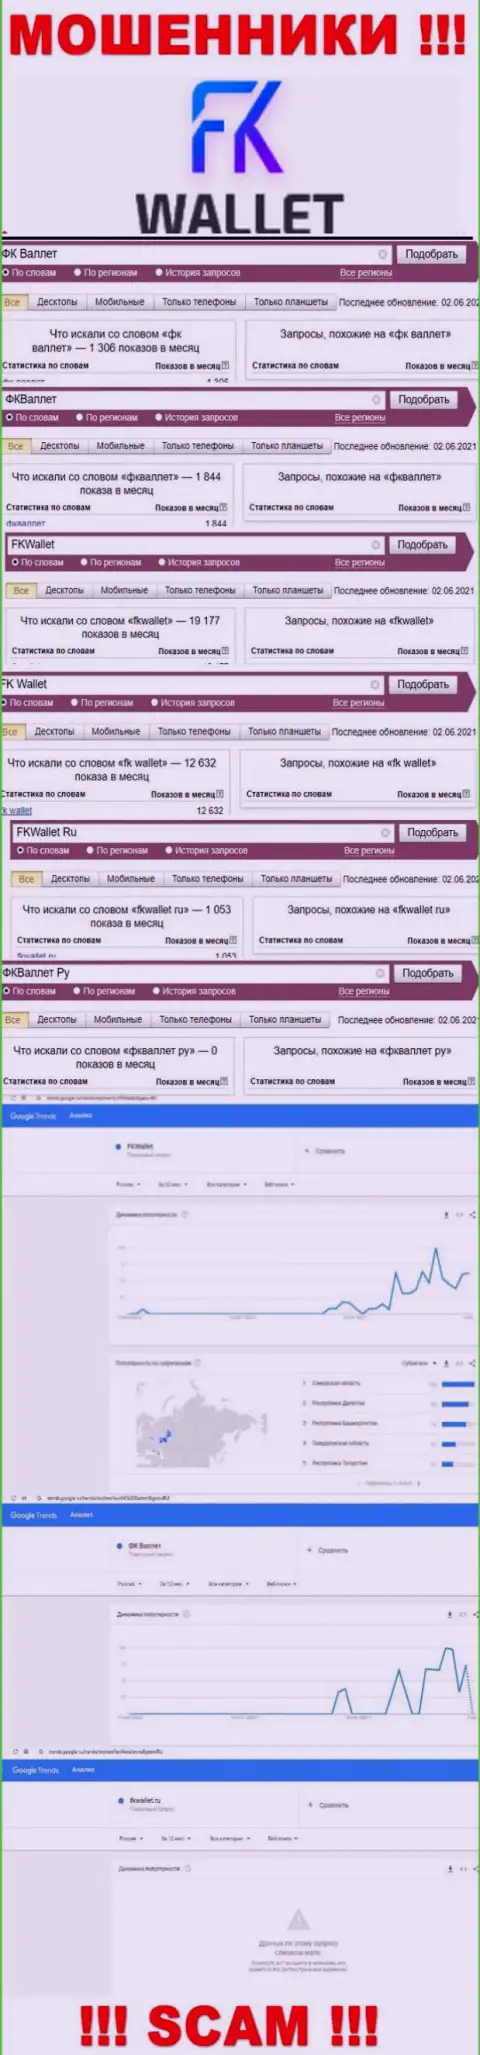 Скрин статистических данных онлайн запросов по мошеннической конторе ФКВаллет